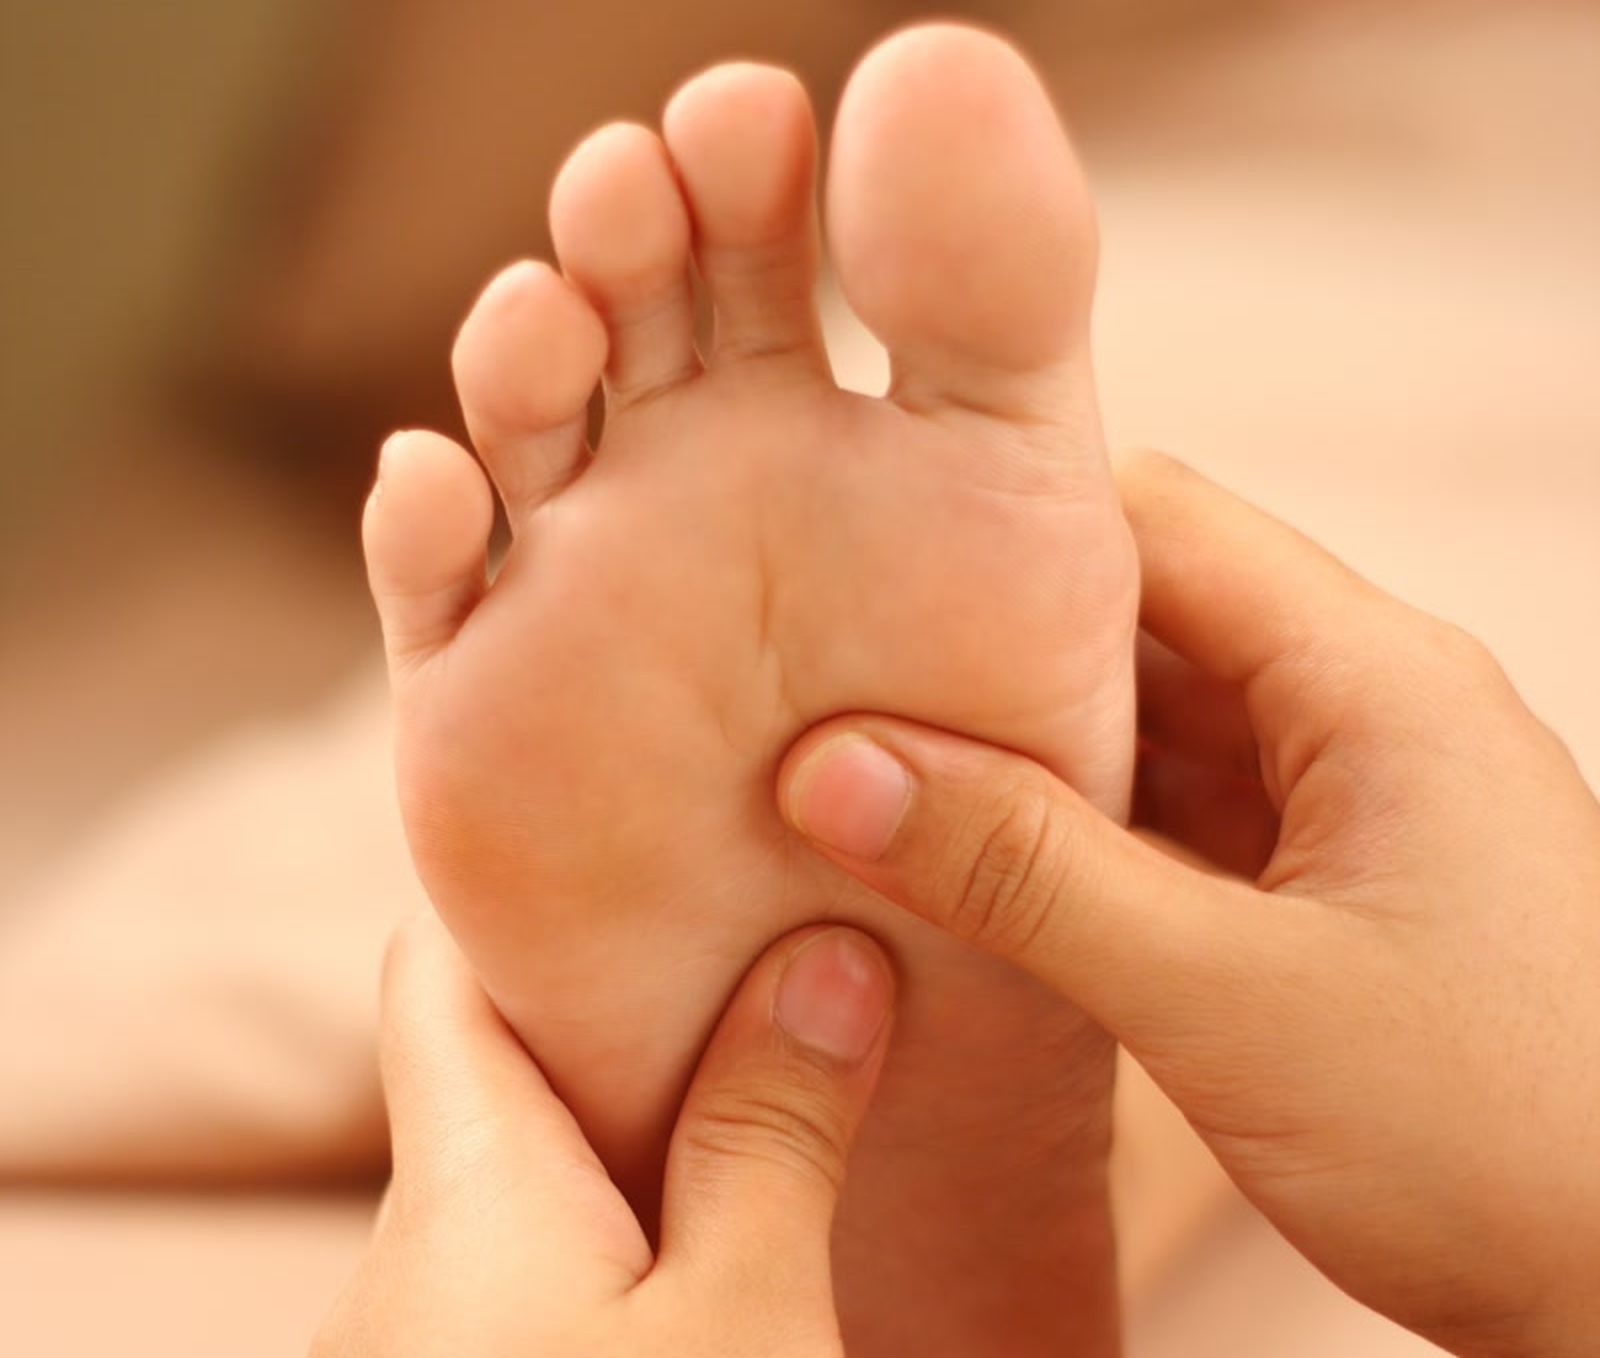 Jak zadbać o stopy? Kilka ważnych rad - jakie zafundować sobie zabiegi - Zdjęcie główne